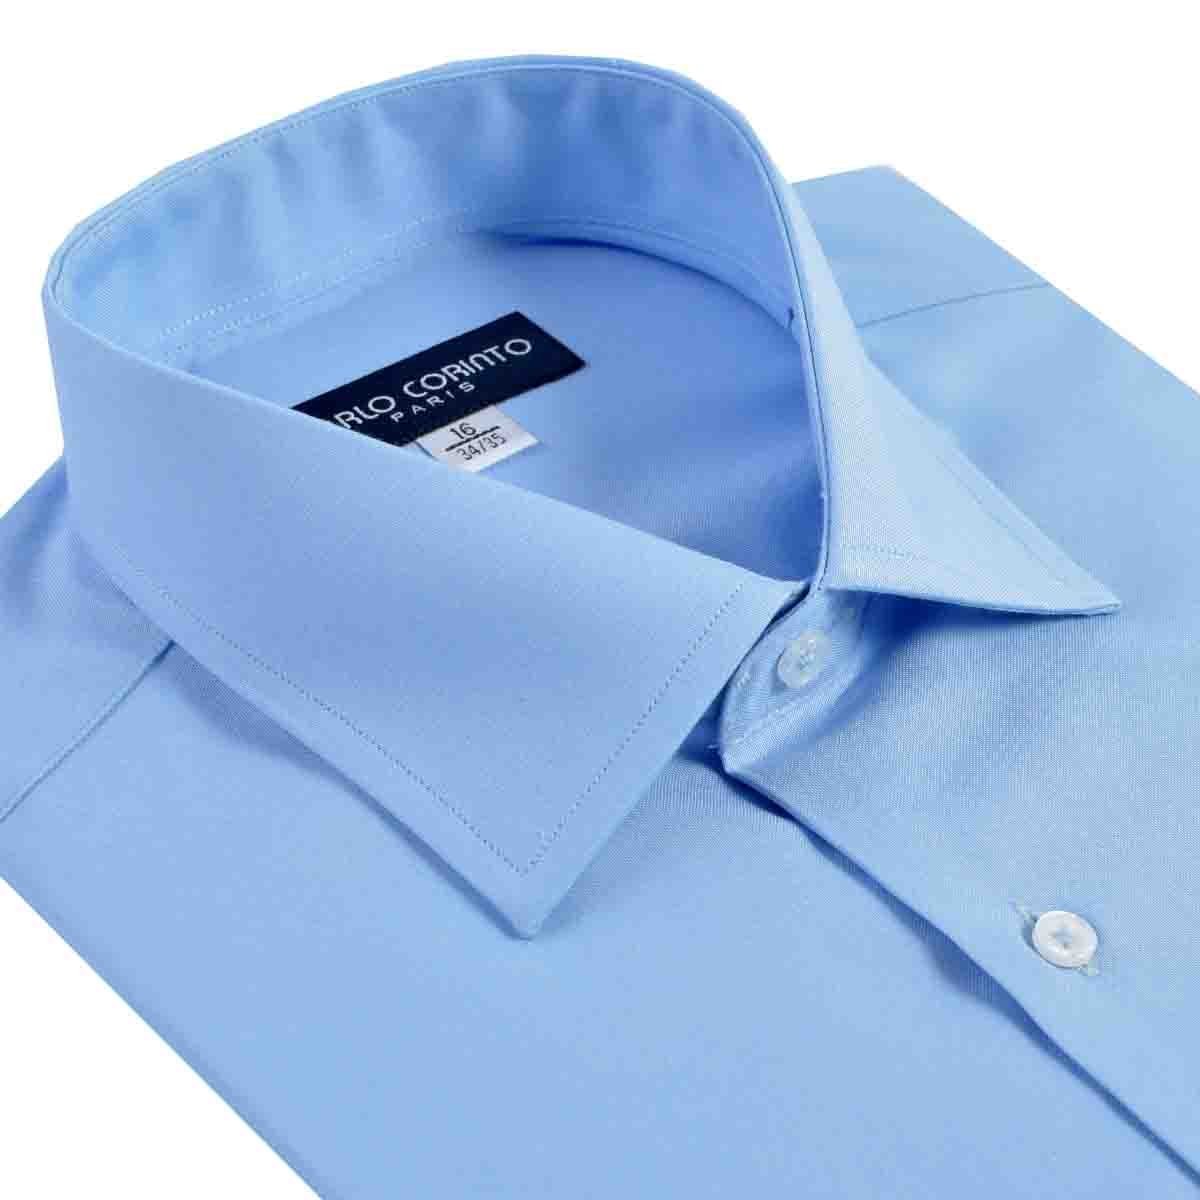 Camisa de Vestir Tradicional Azul Secf 08 Carlo Corinto para Caballero